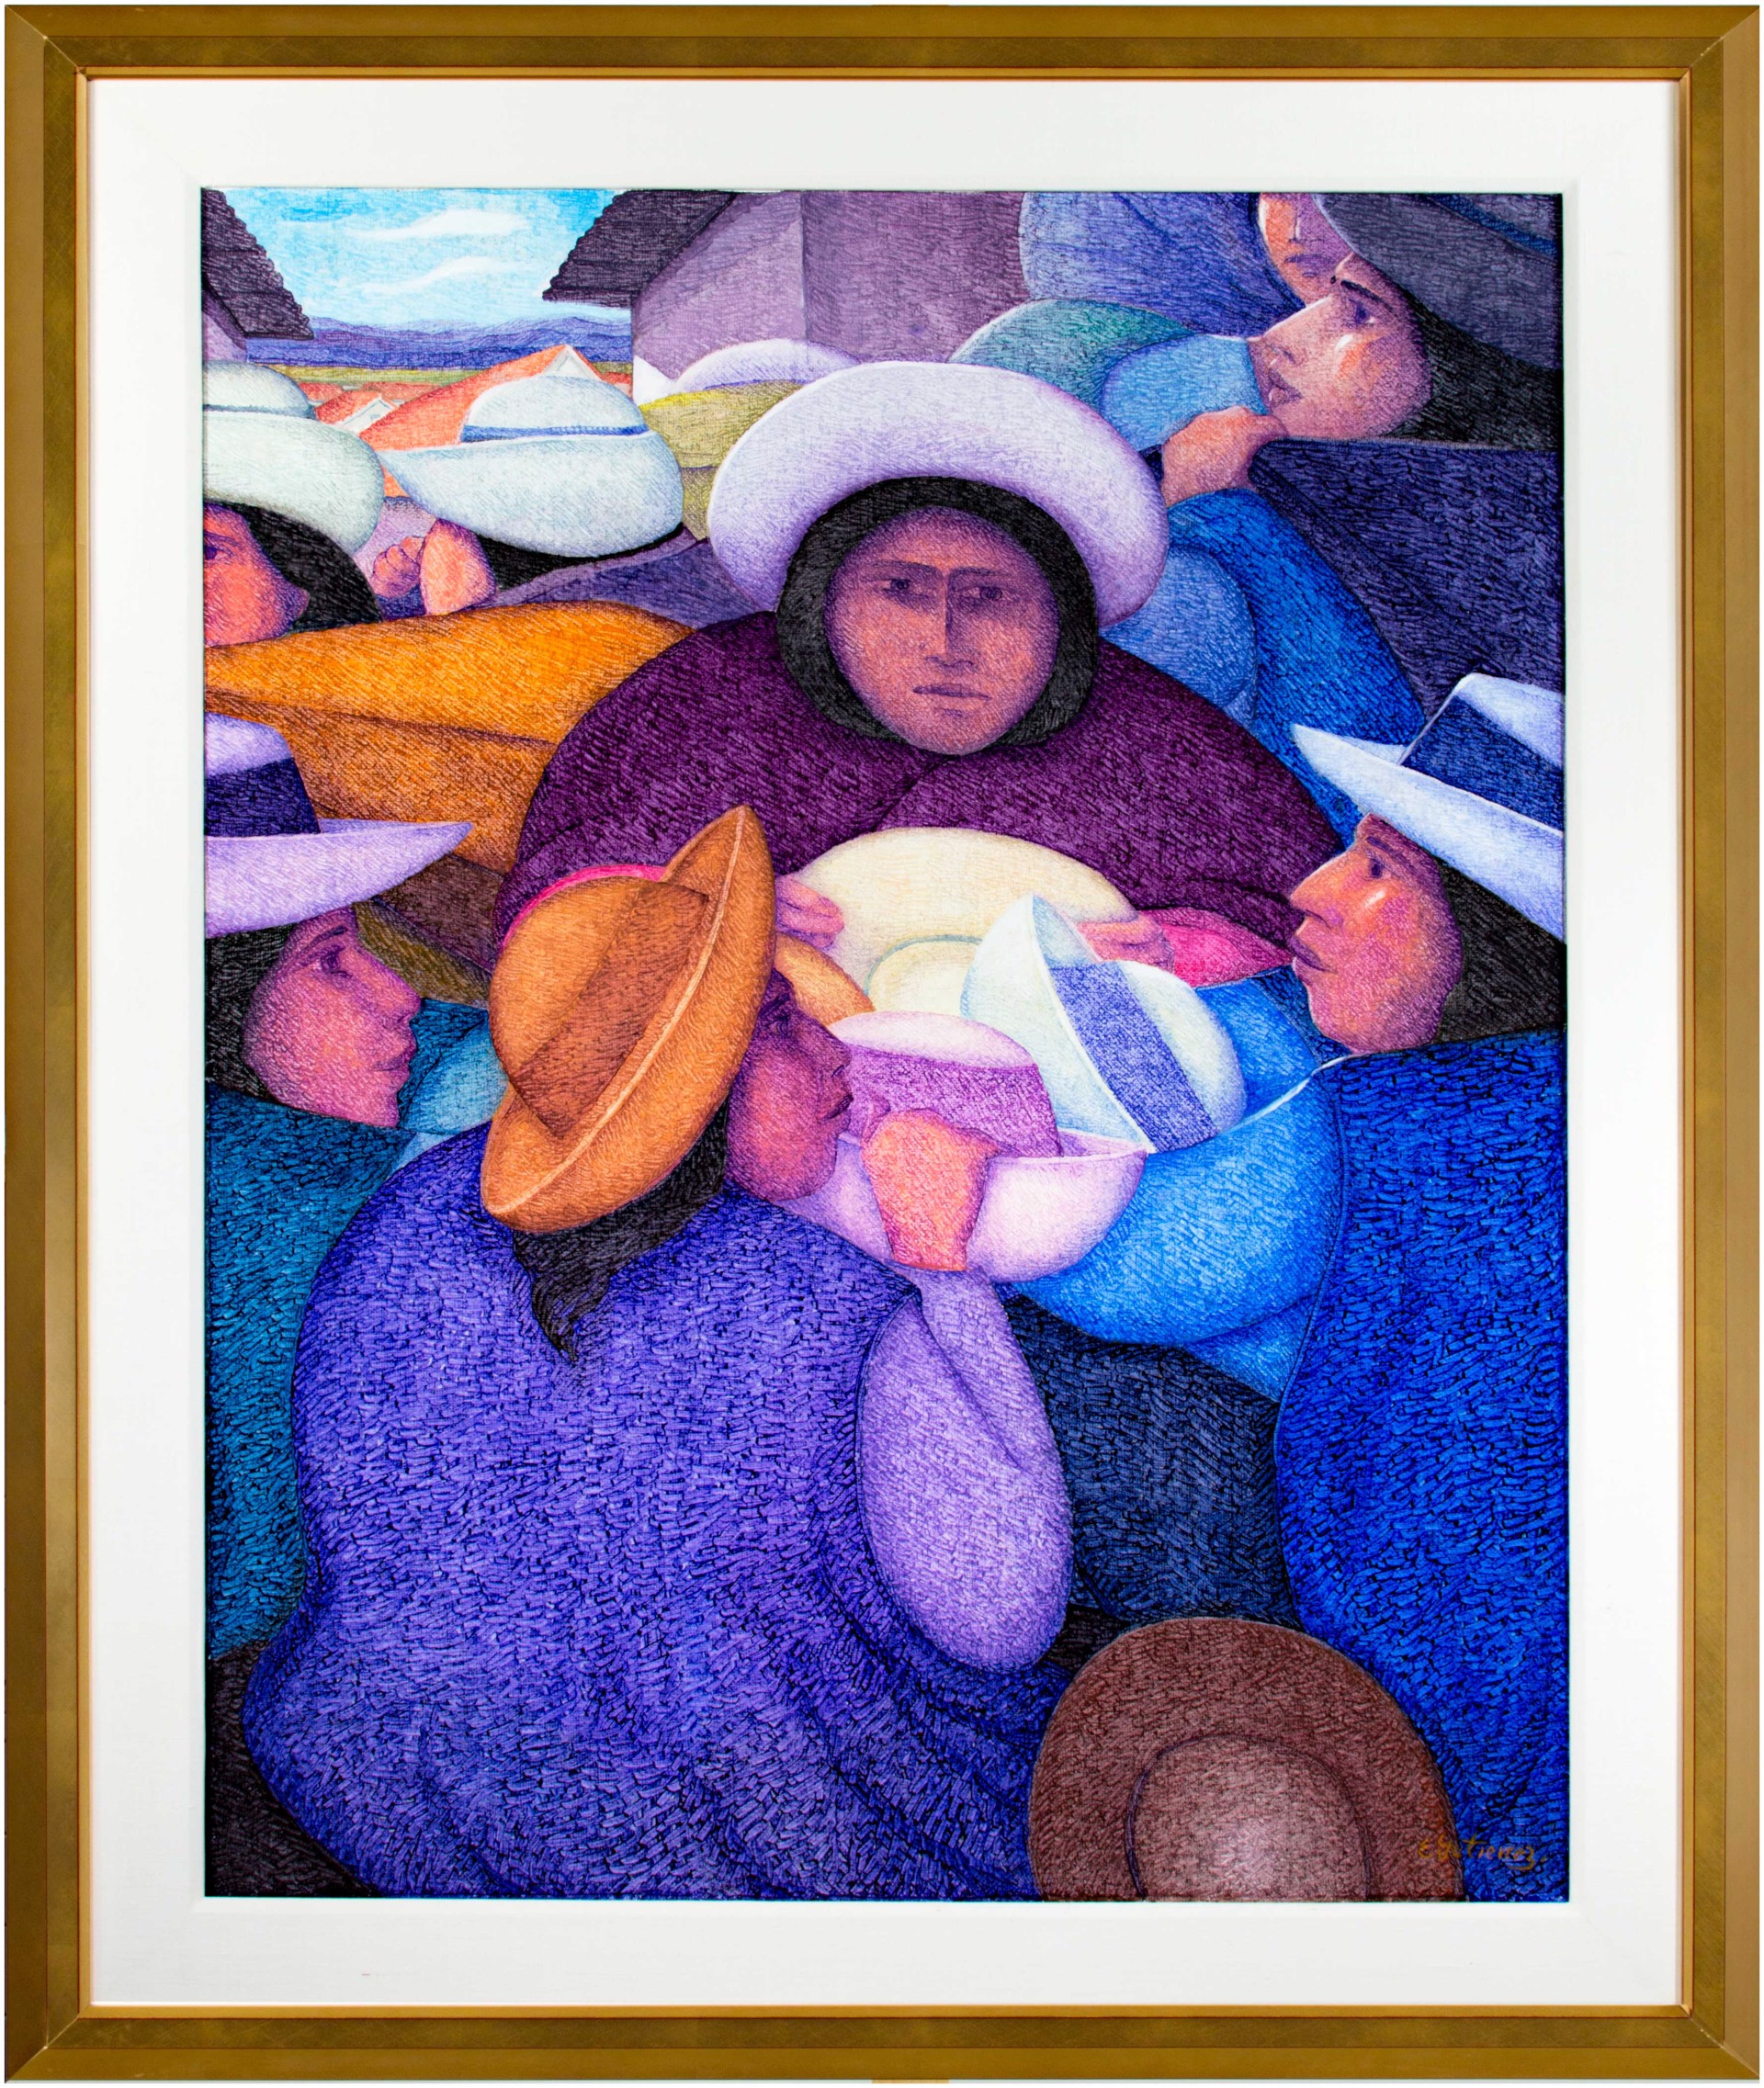 Vendedora de Sombreros by Ernesto Gutierrez